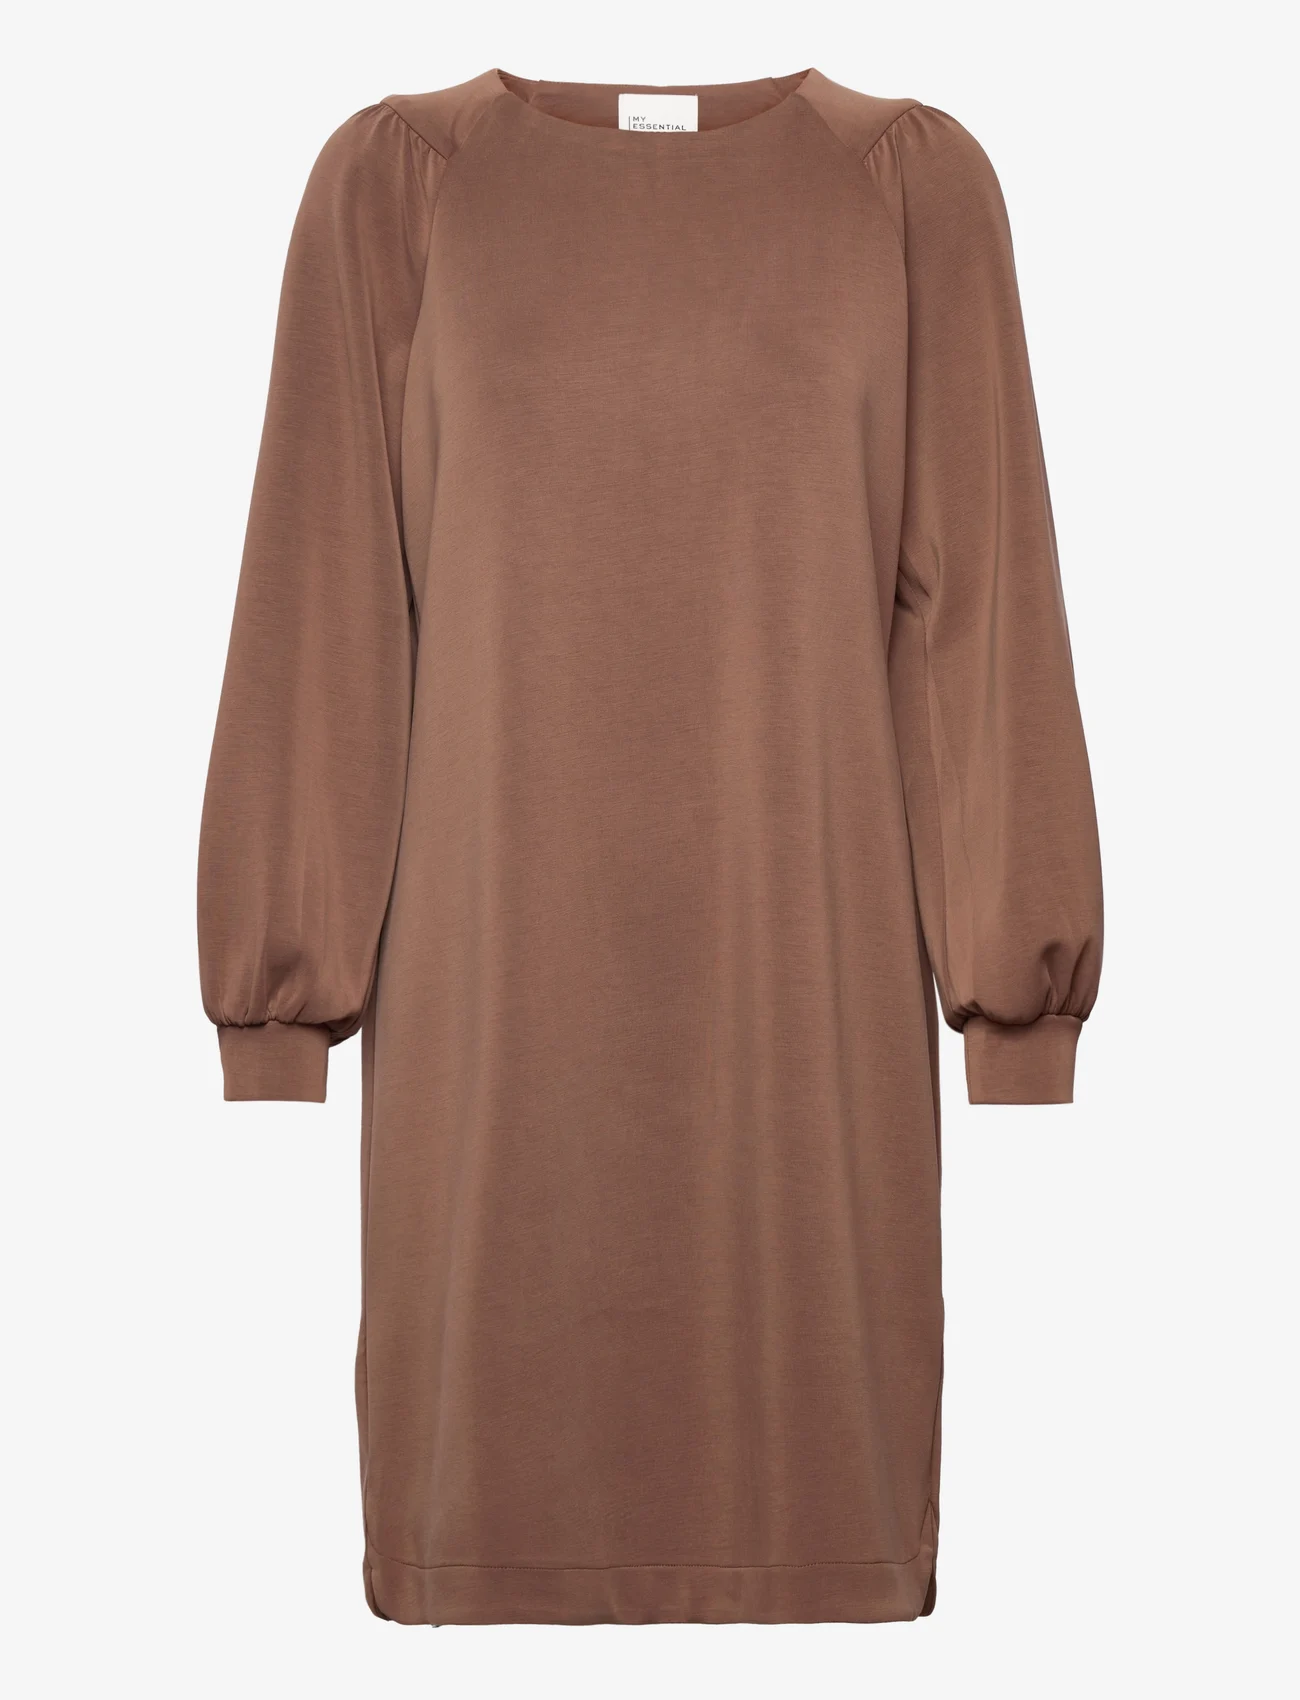 My Essential Wardrobe - MWElle Dress - midi-kleider - toffee brown washed - 0